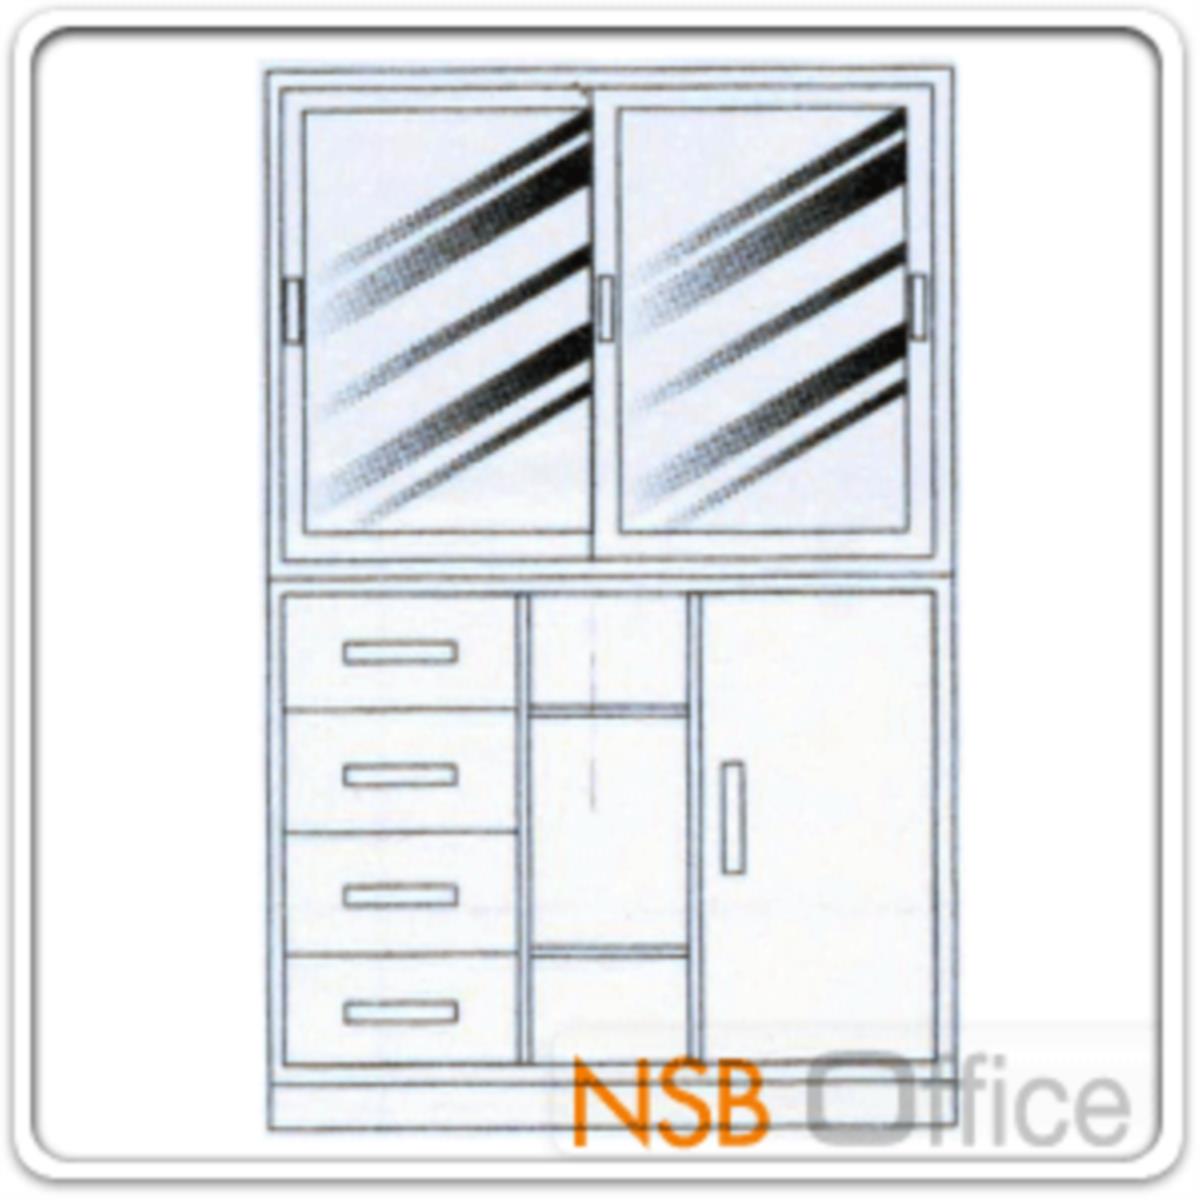 E02A044:ชุดตู้เก็บเอกสารเหล็ก 4 ฟุต บนบานเลื่อนกระจก ล่างตู้ 3 in 1 พร้อมฐานรอง   